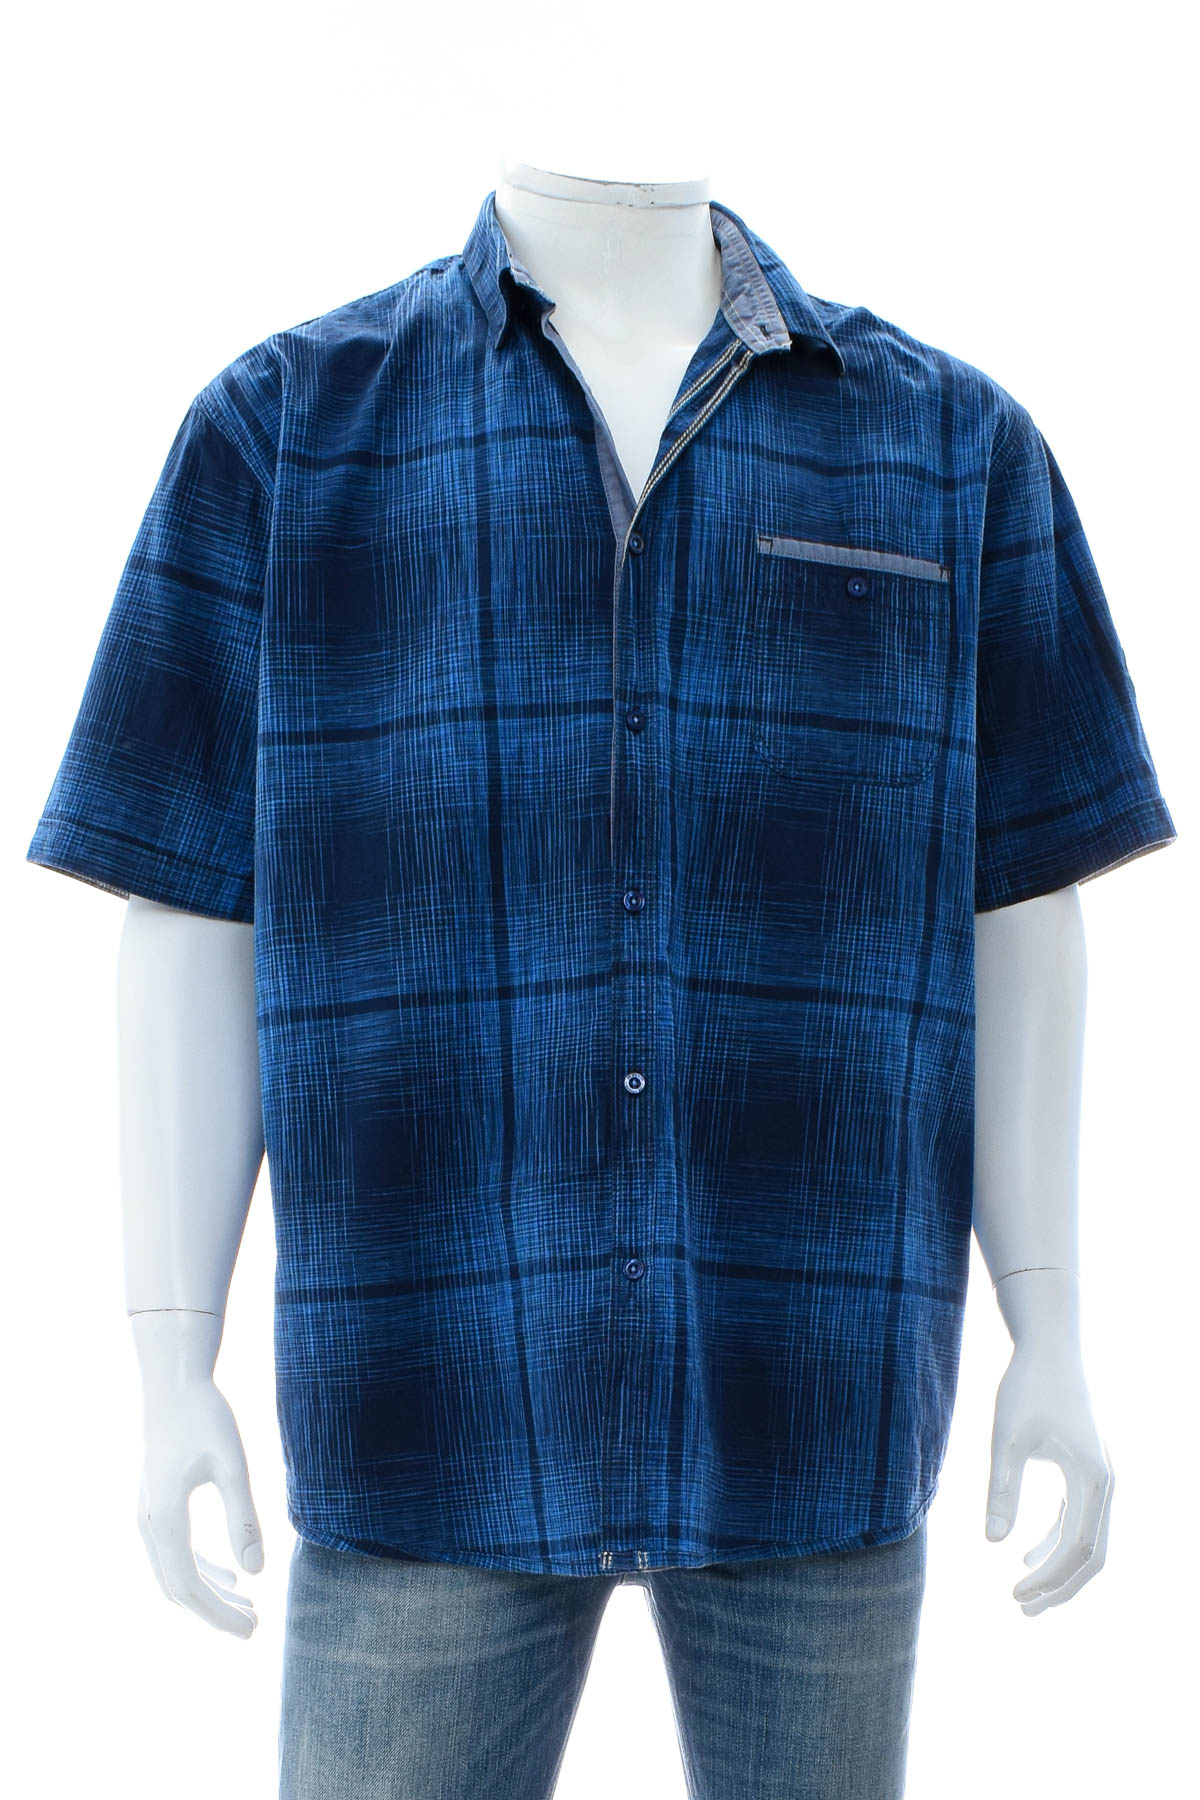 Ανδρικό πουκάμισο - Jim Spencer - 0